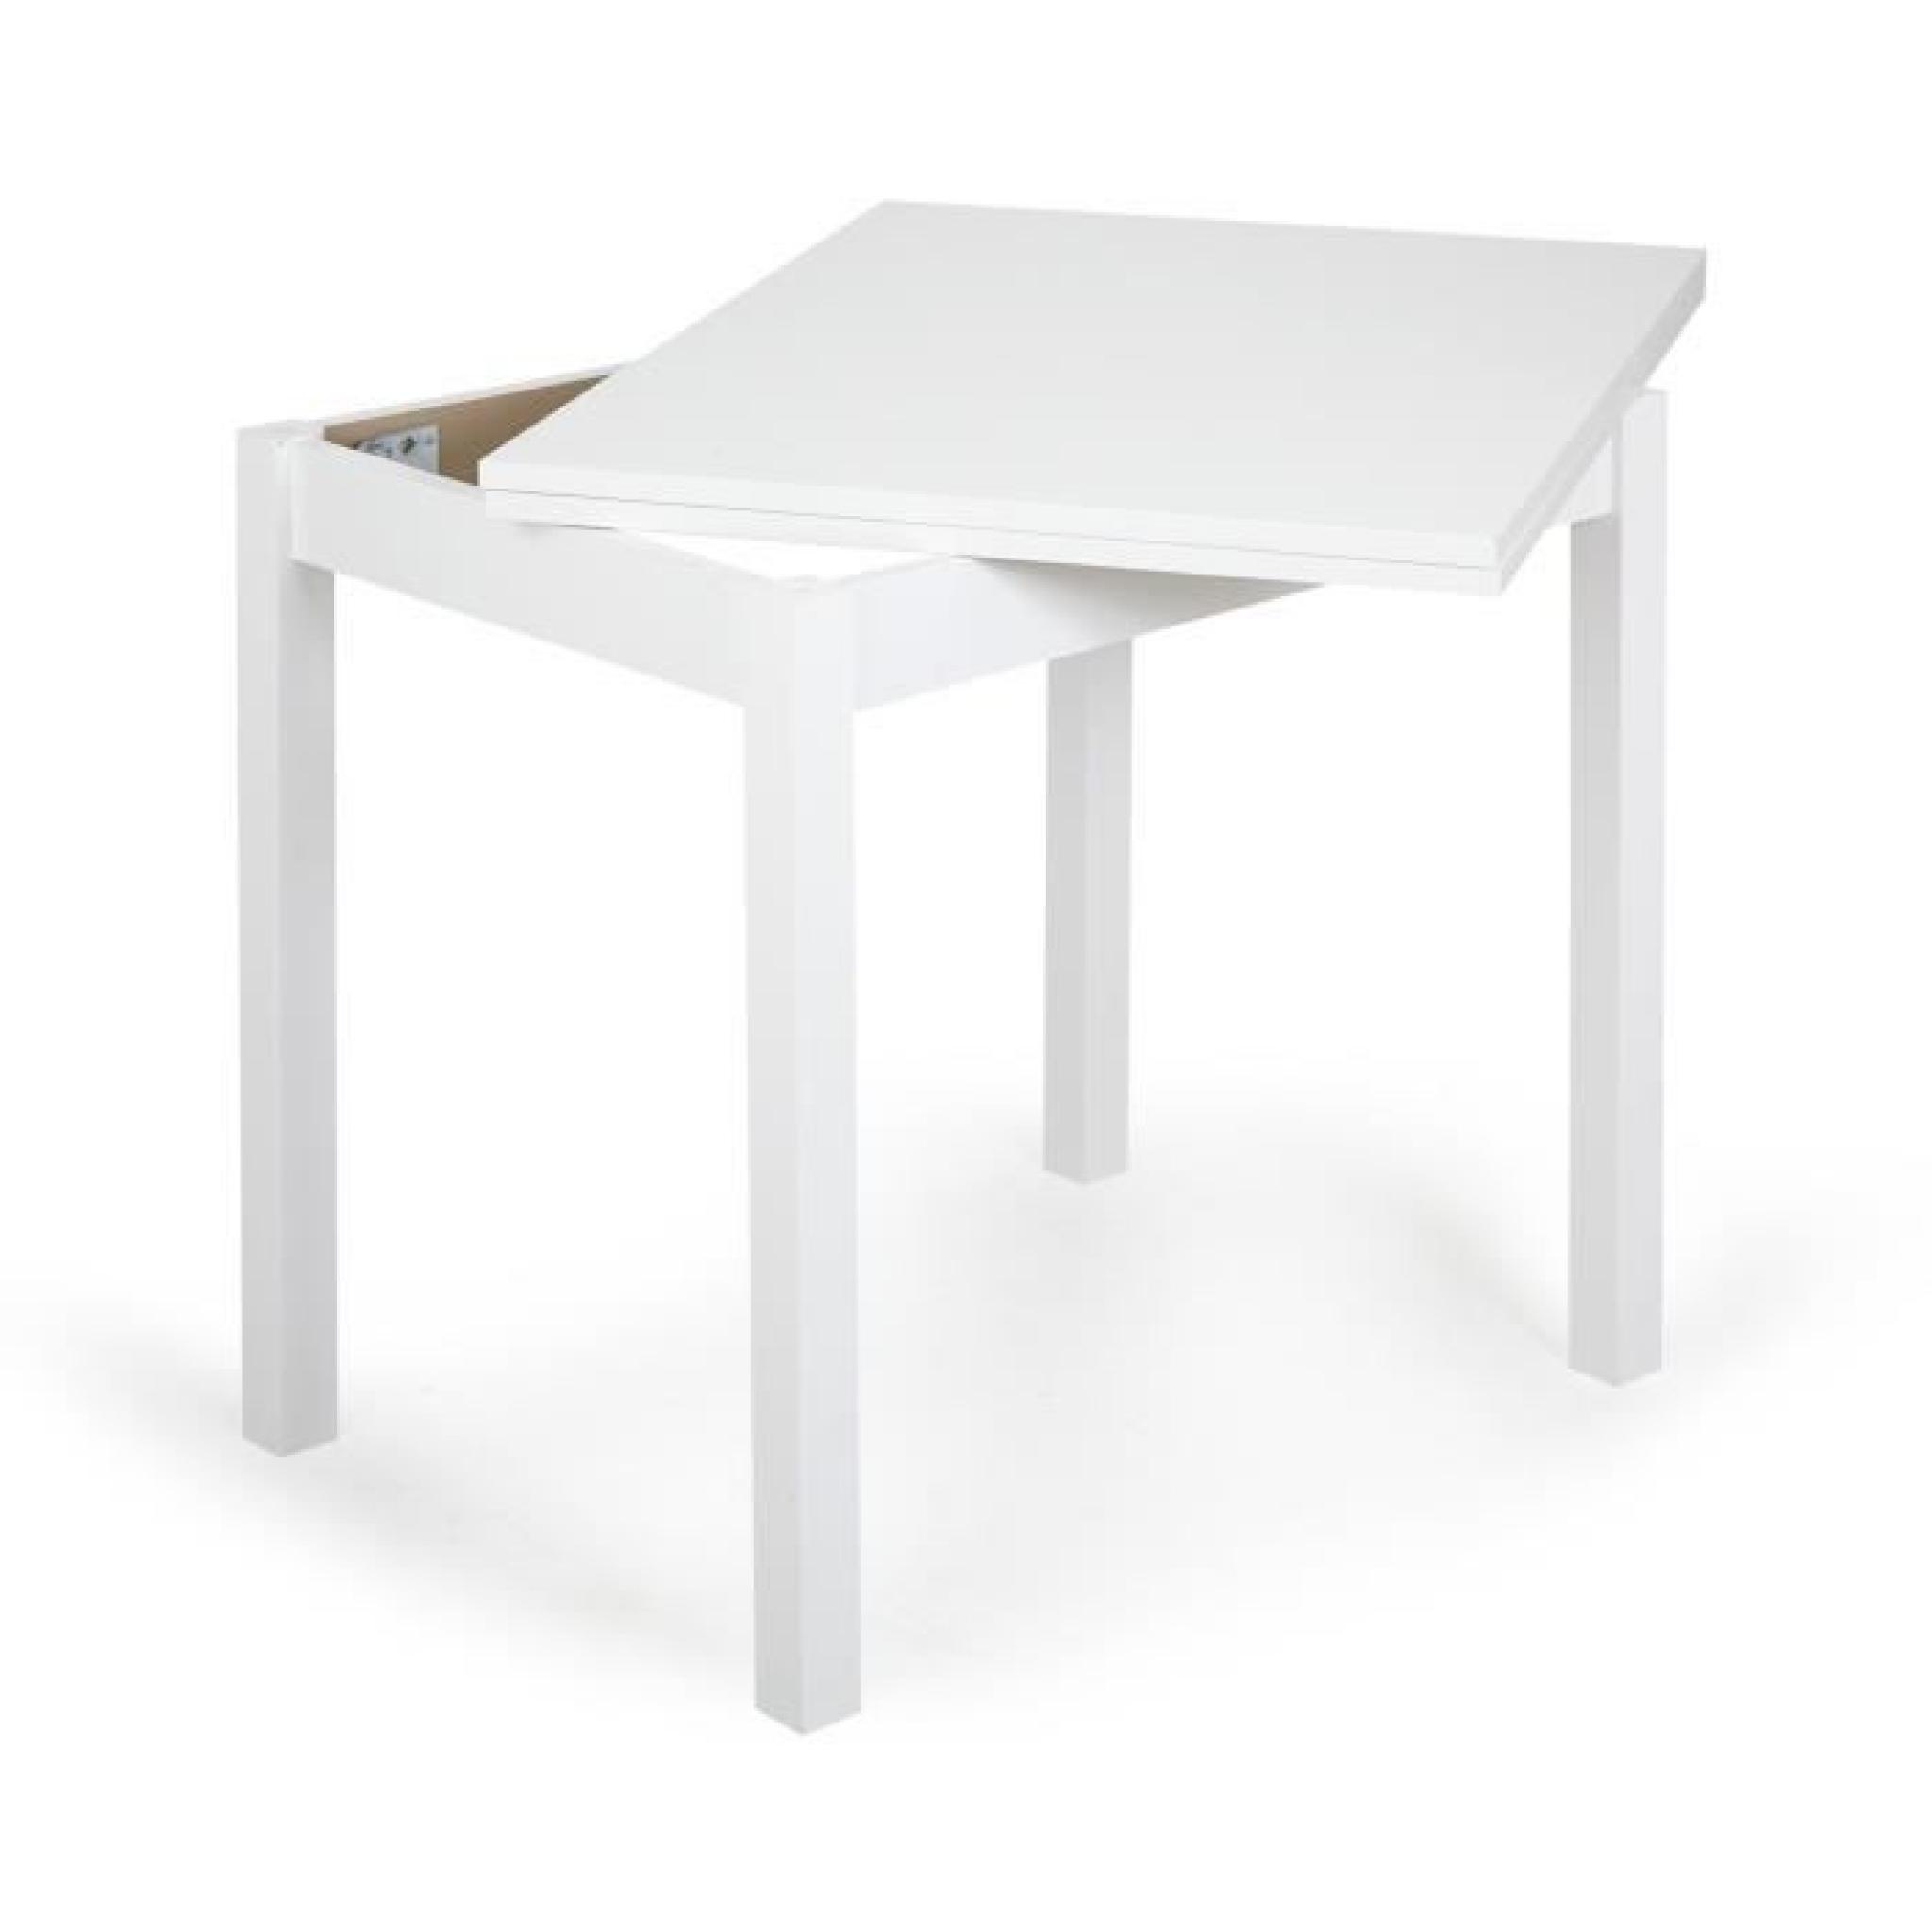 Twist Table Table de cuisine modulable 80cm à 120cm pas cher